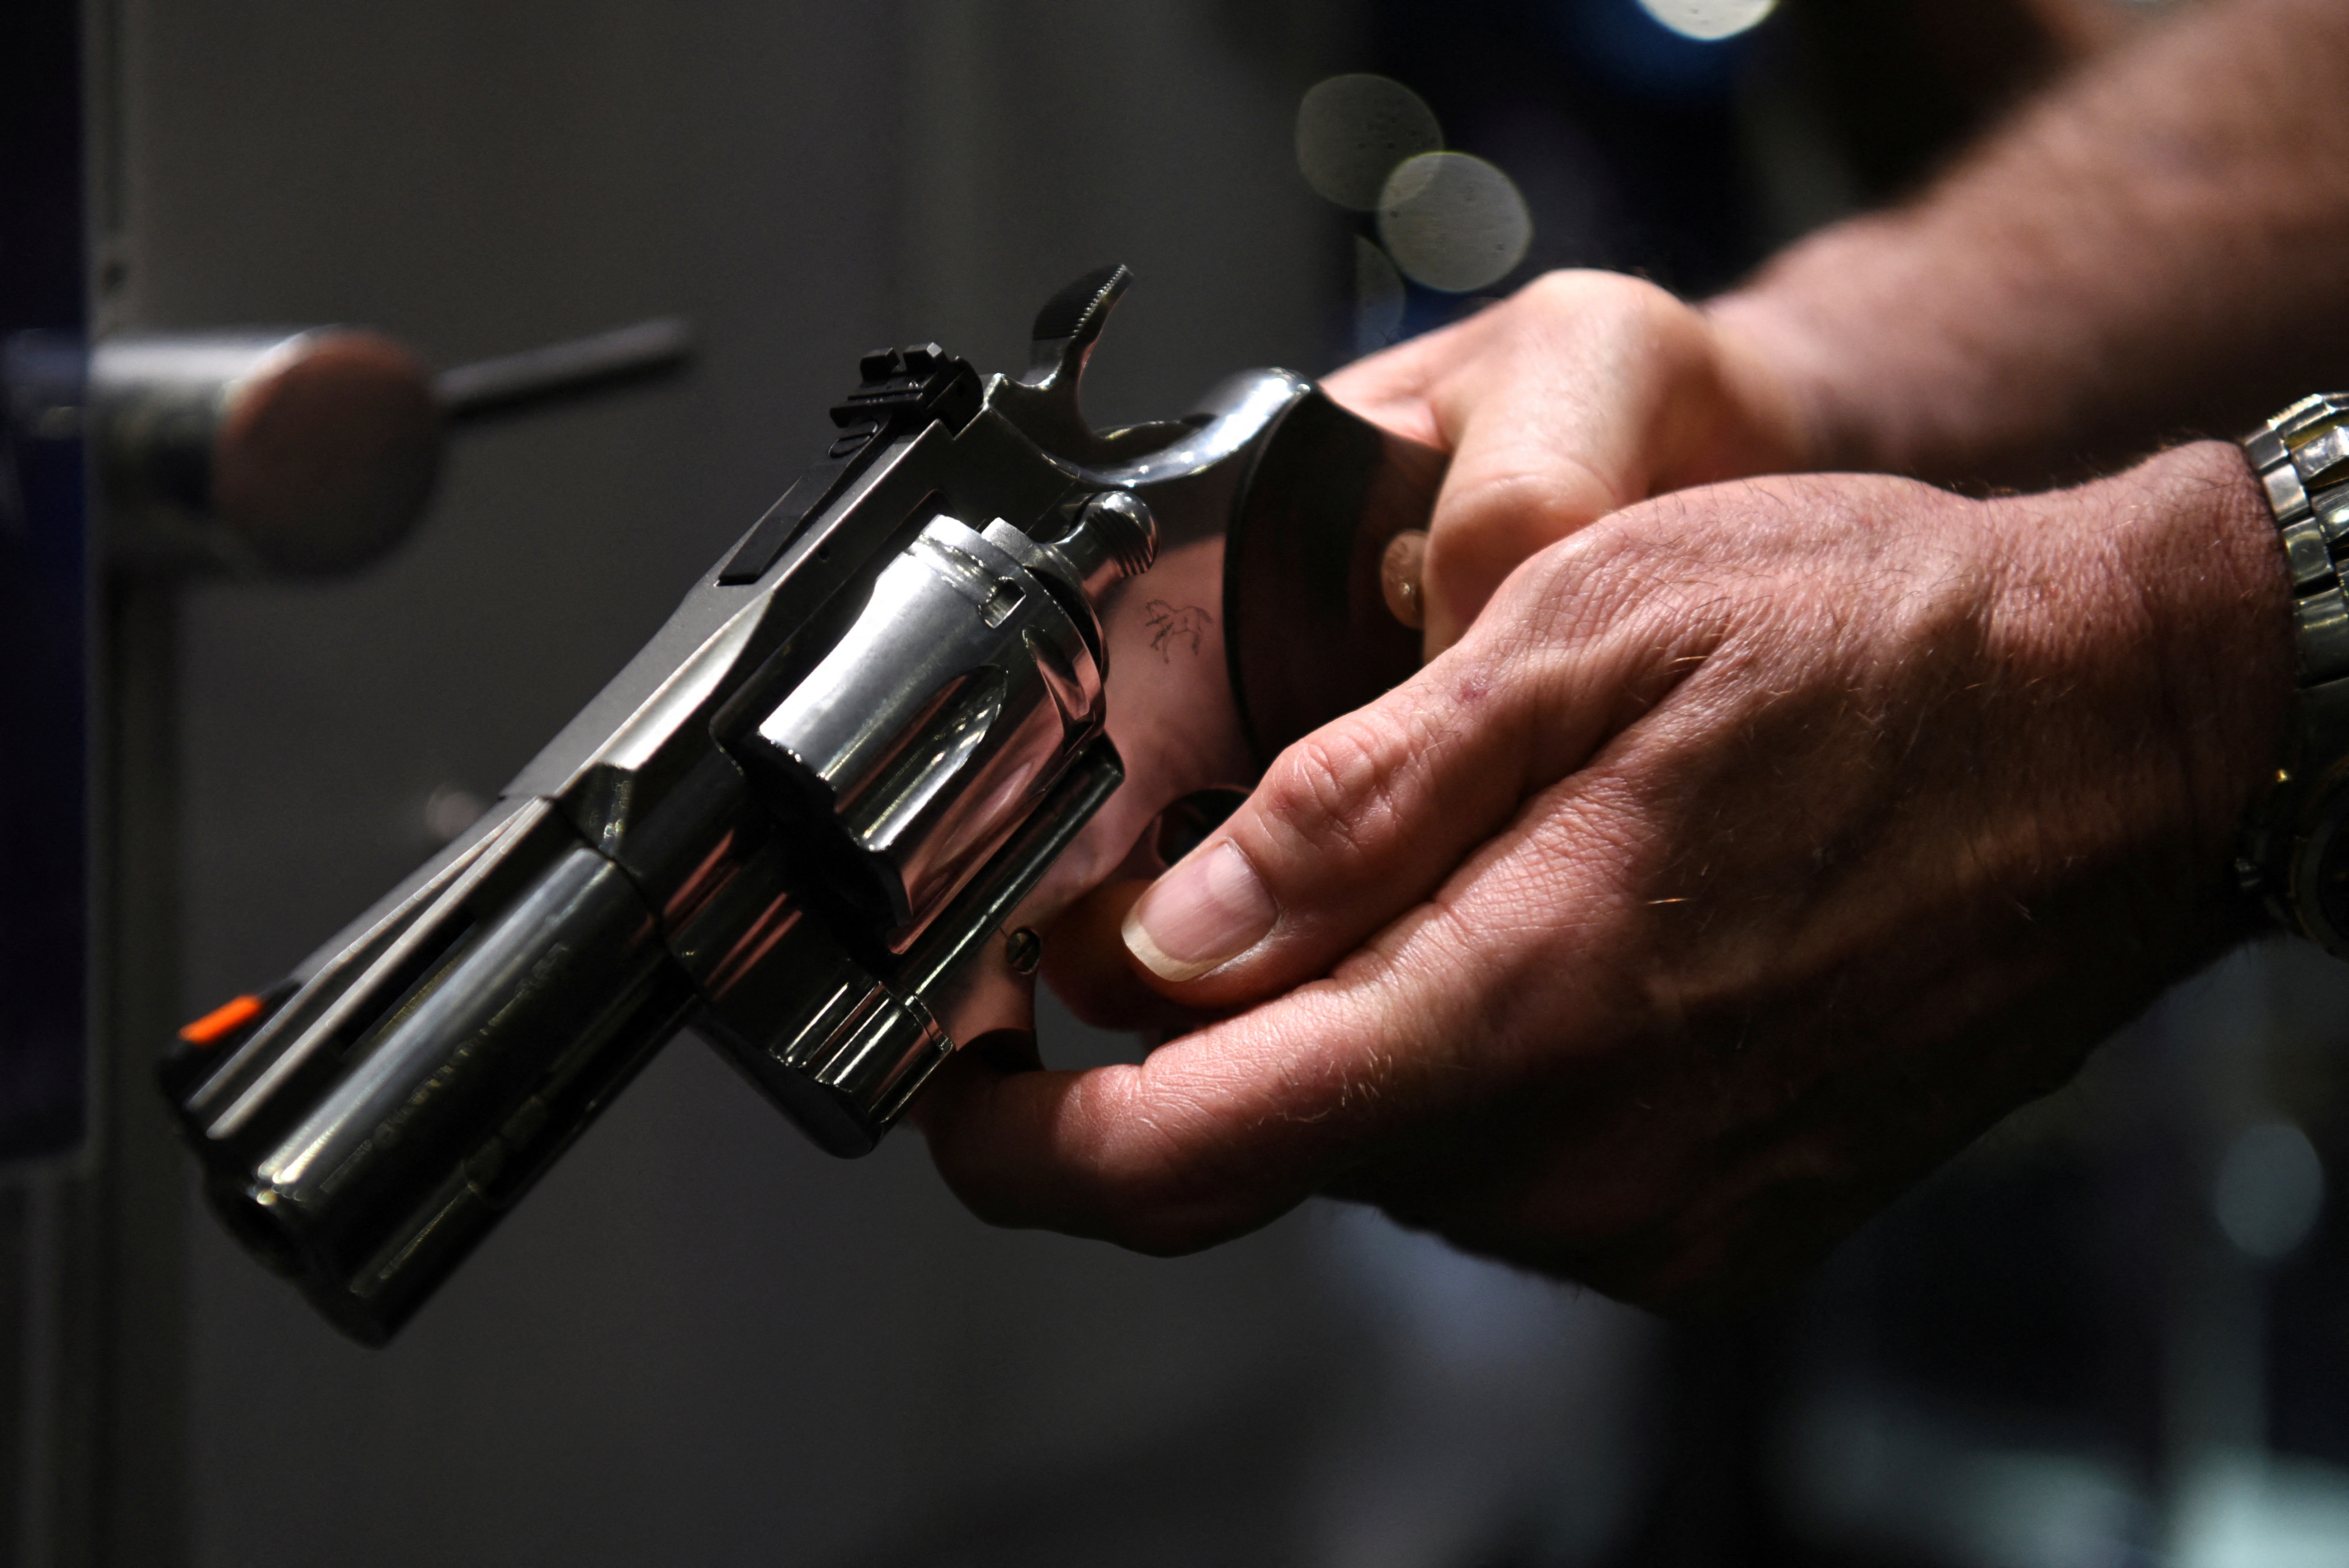 Gun companies report declining demand for firearms